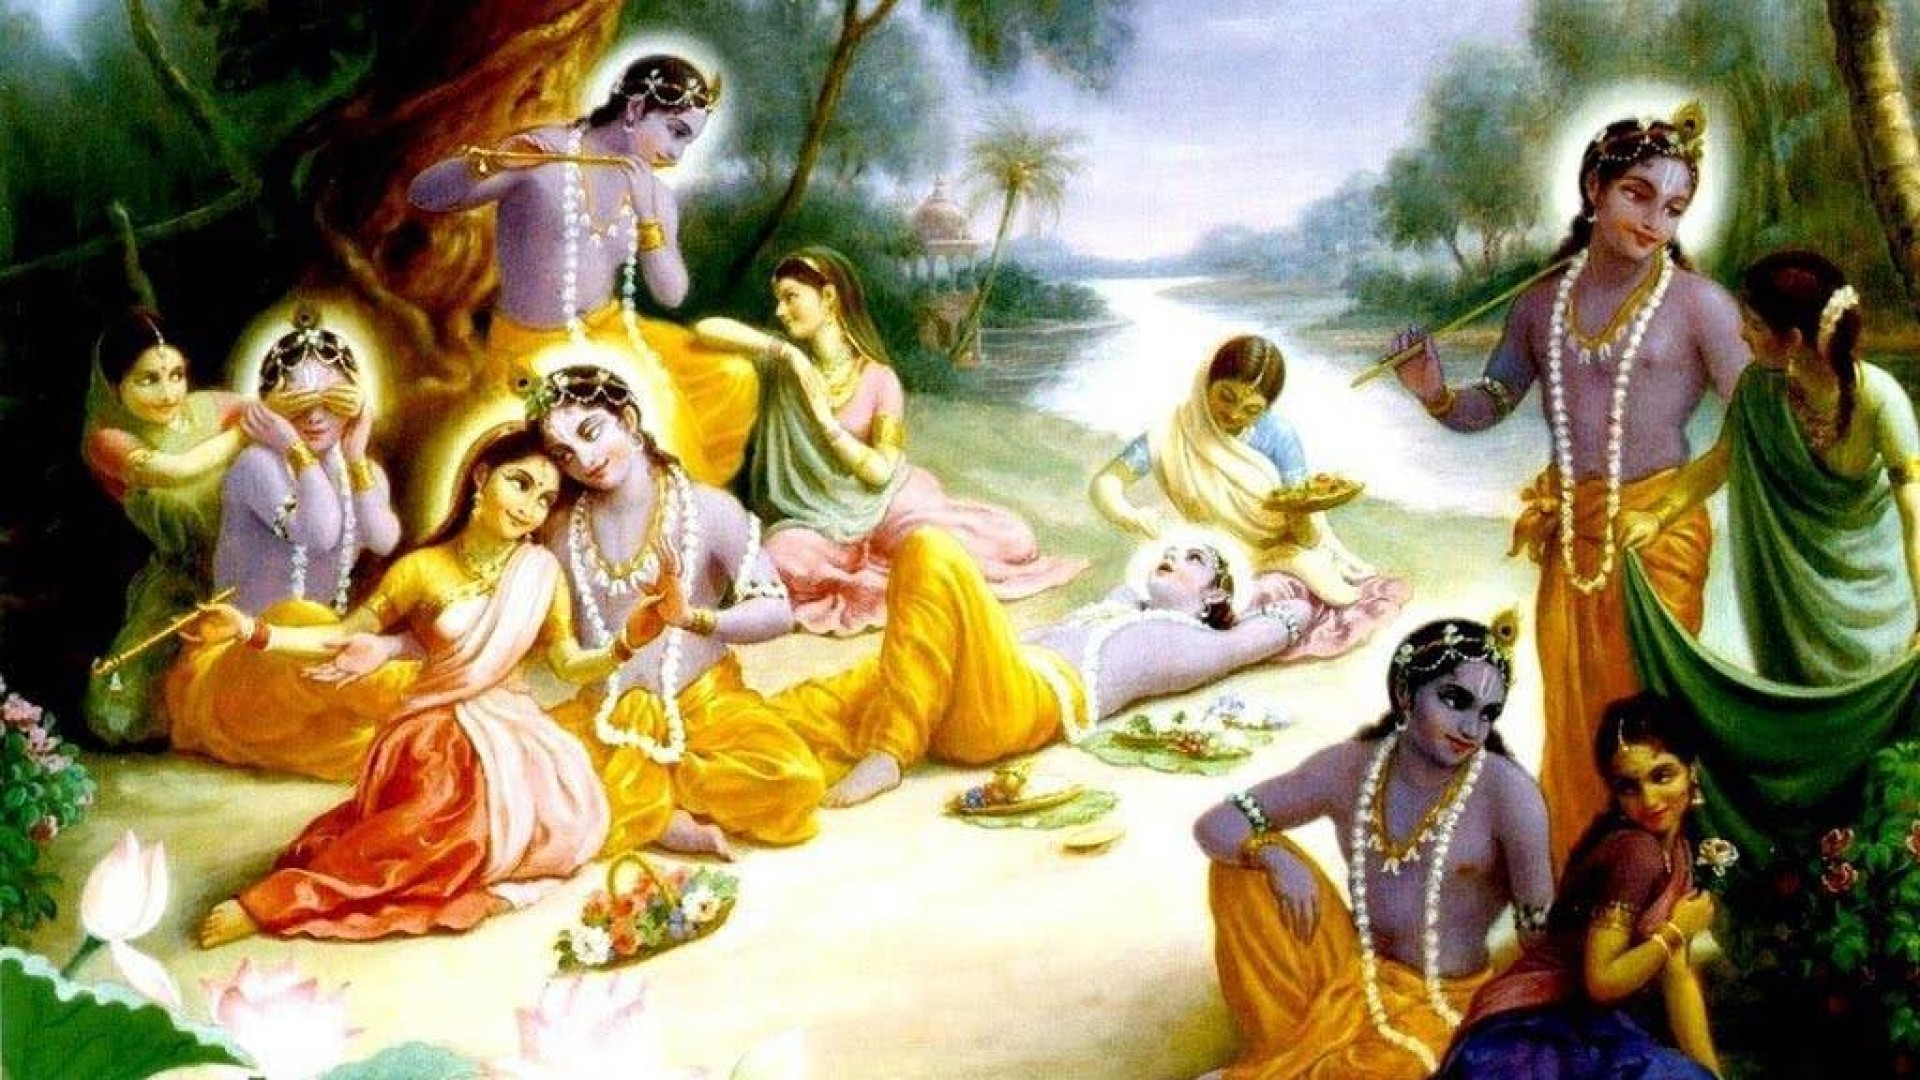 Sri-Krishna-alien-civilisation-atma-nirvana-9